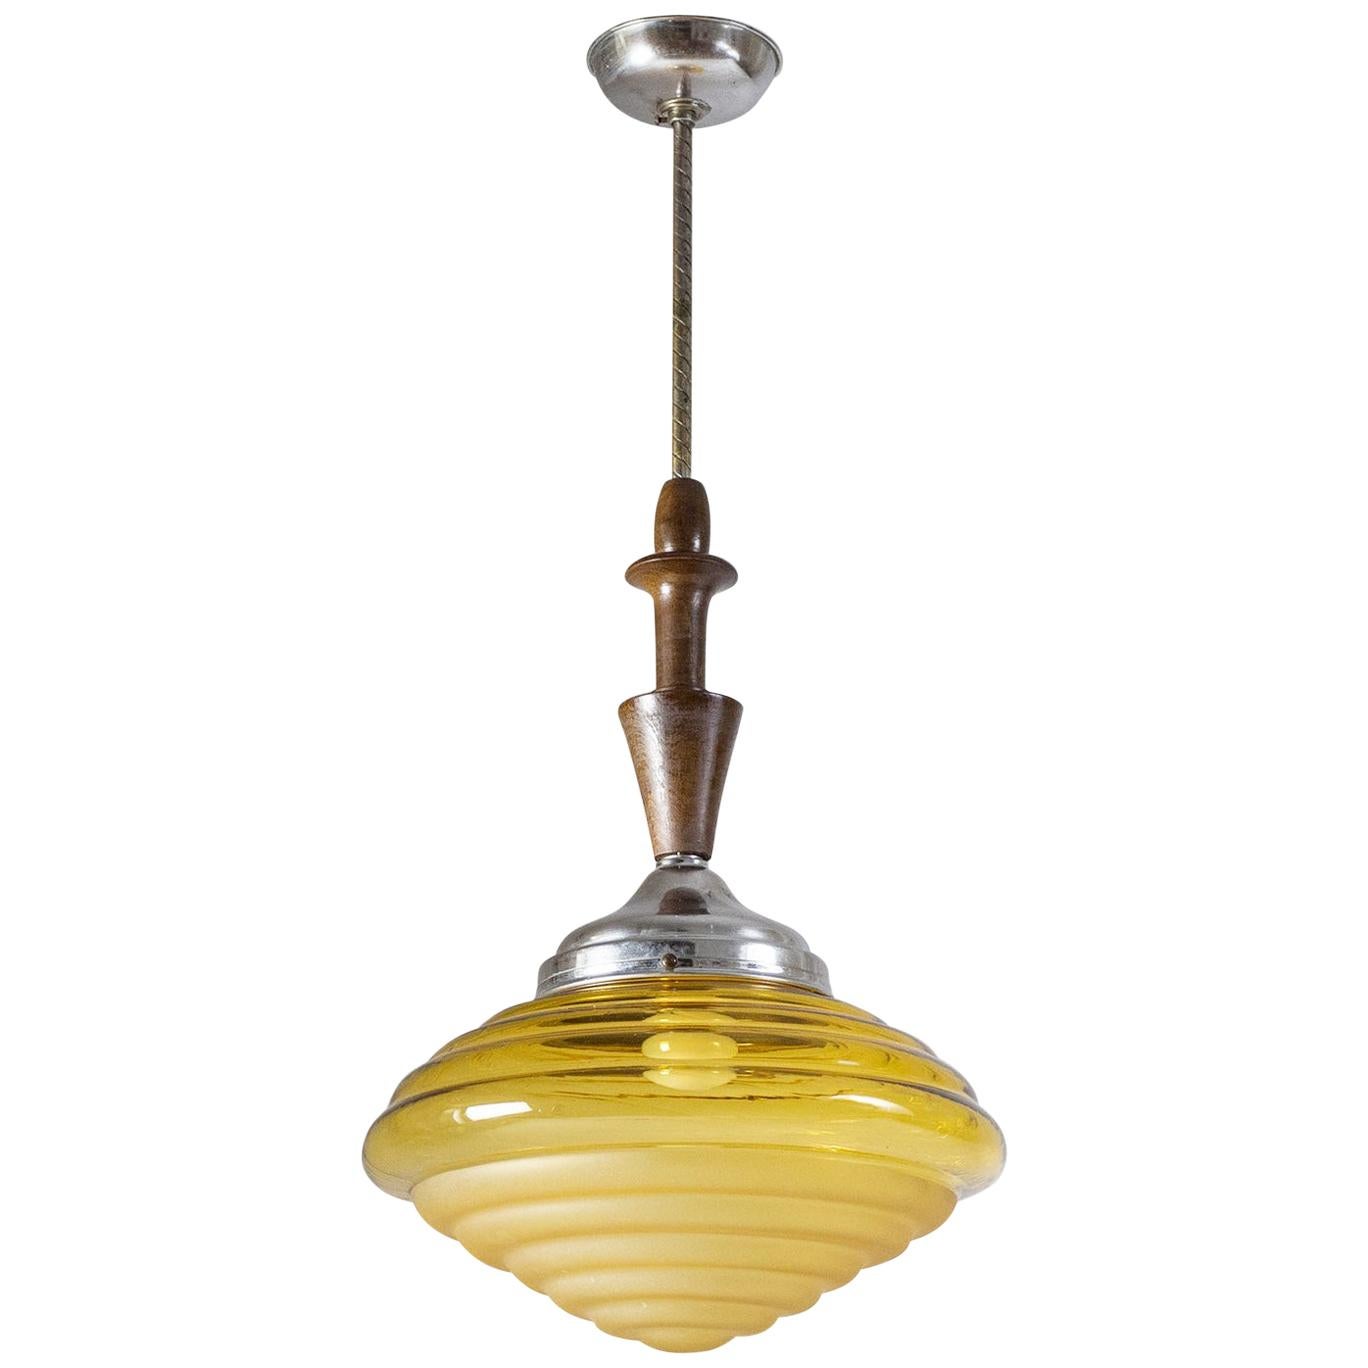 Lampe à suspension Art déco italienne, vers 1930, verre ambré, bois